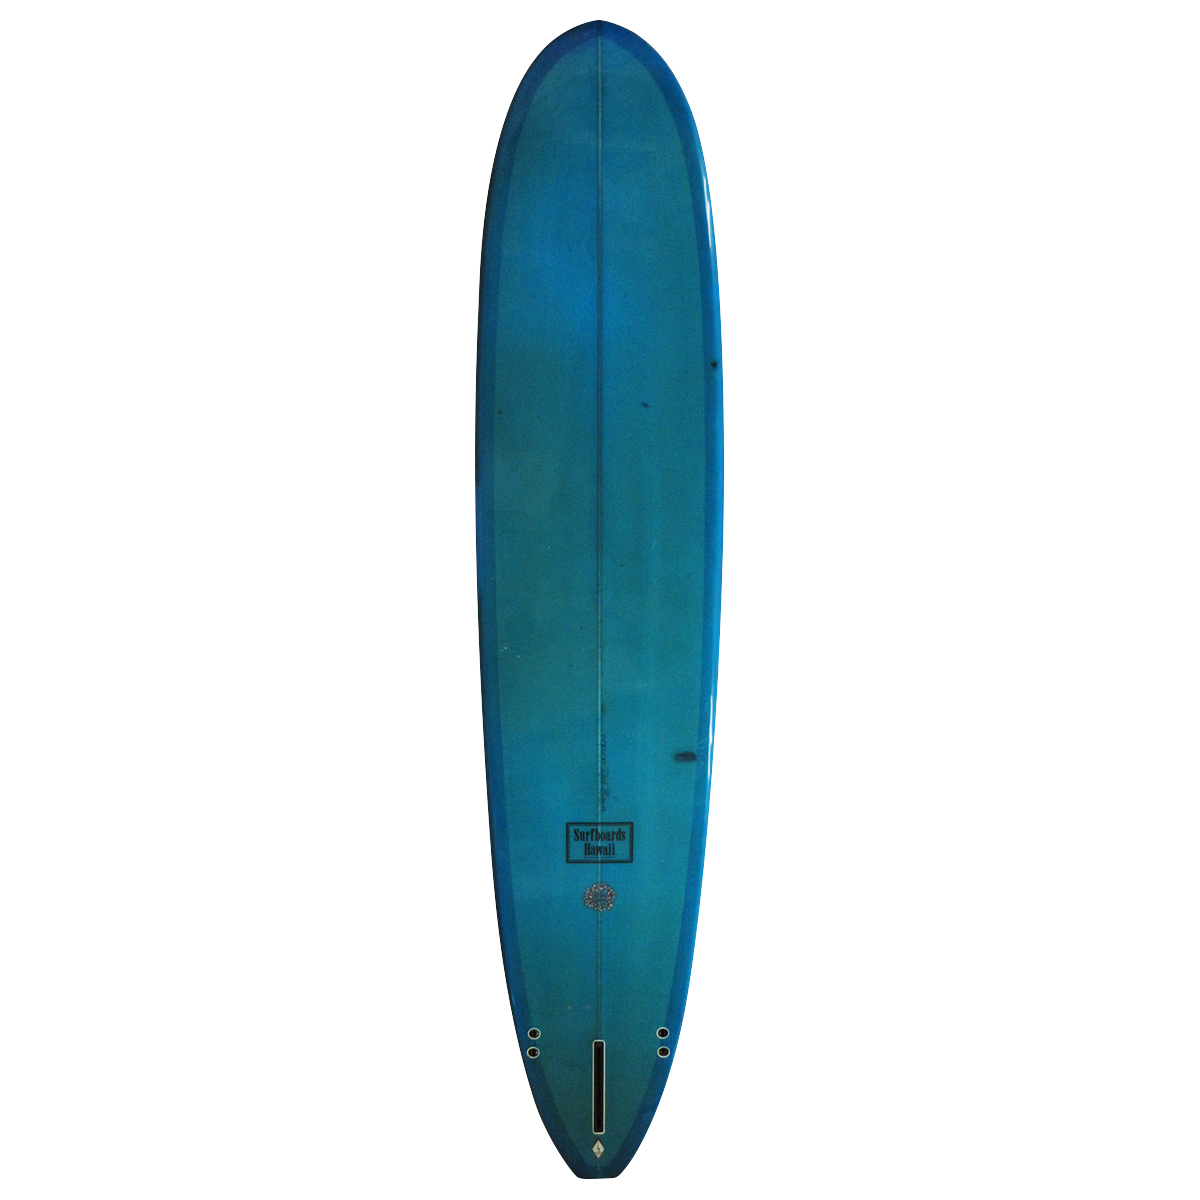 KD surf  board 6.8ft